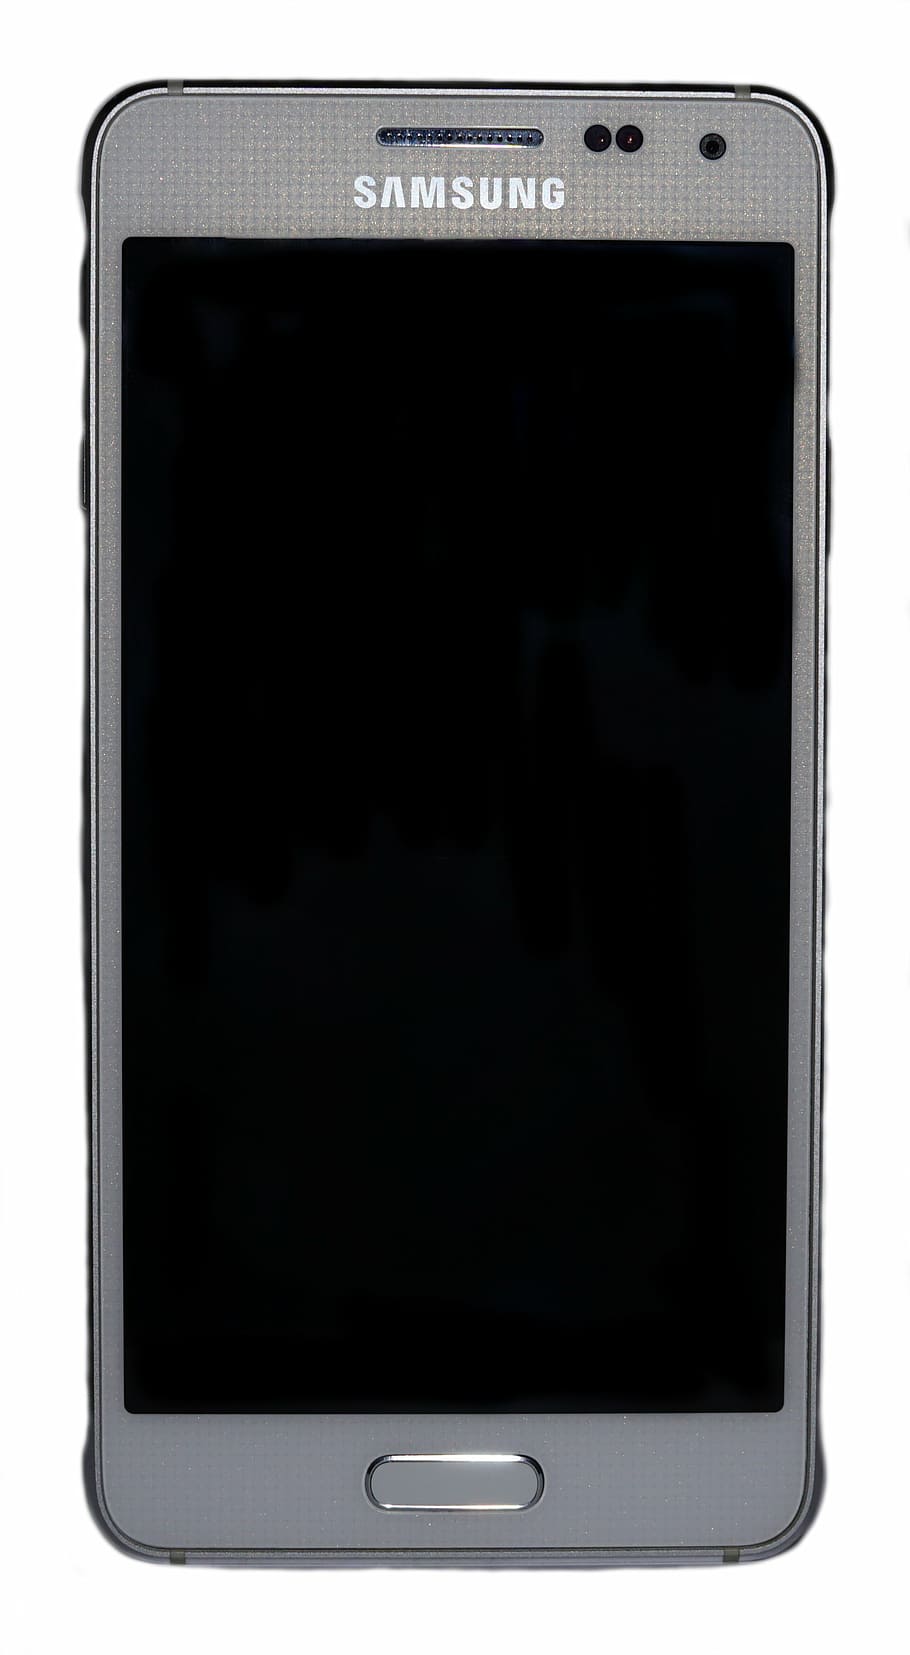 abu-abu, smartphone samsung galaxy android, ponsel, smartphone, samsung, layar sentuh, layar, komunikasi, samsung galaxy, hitam